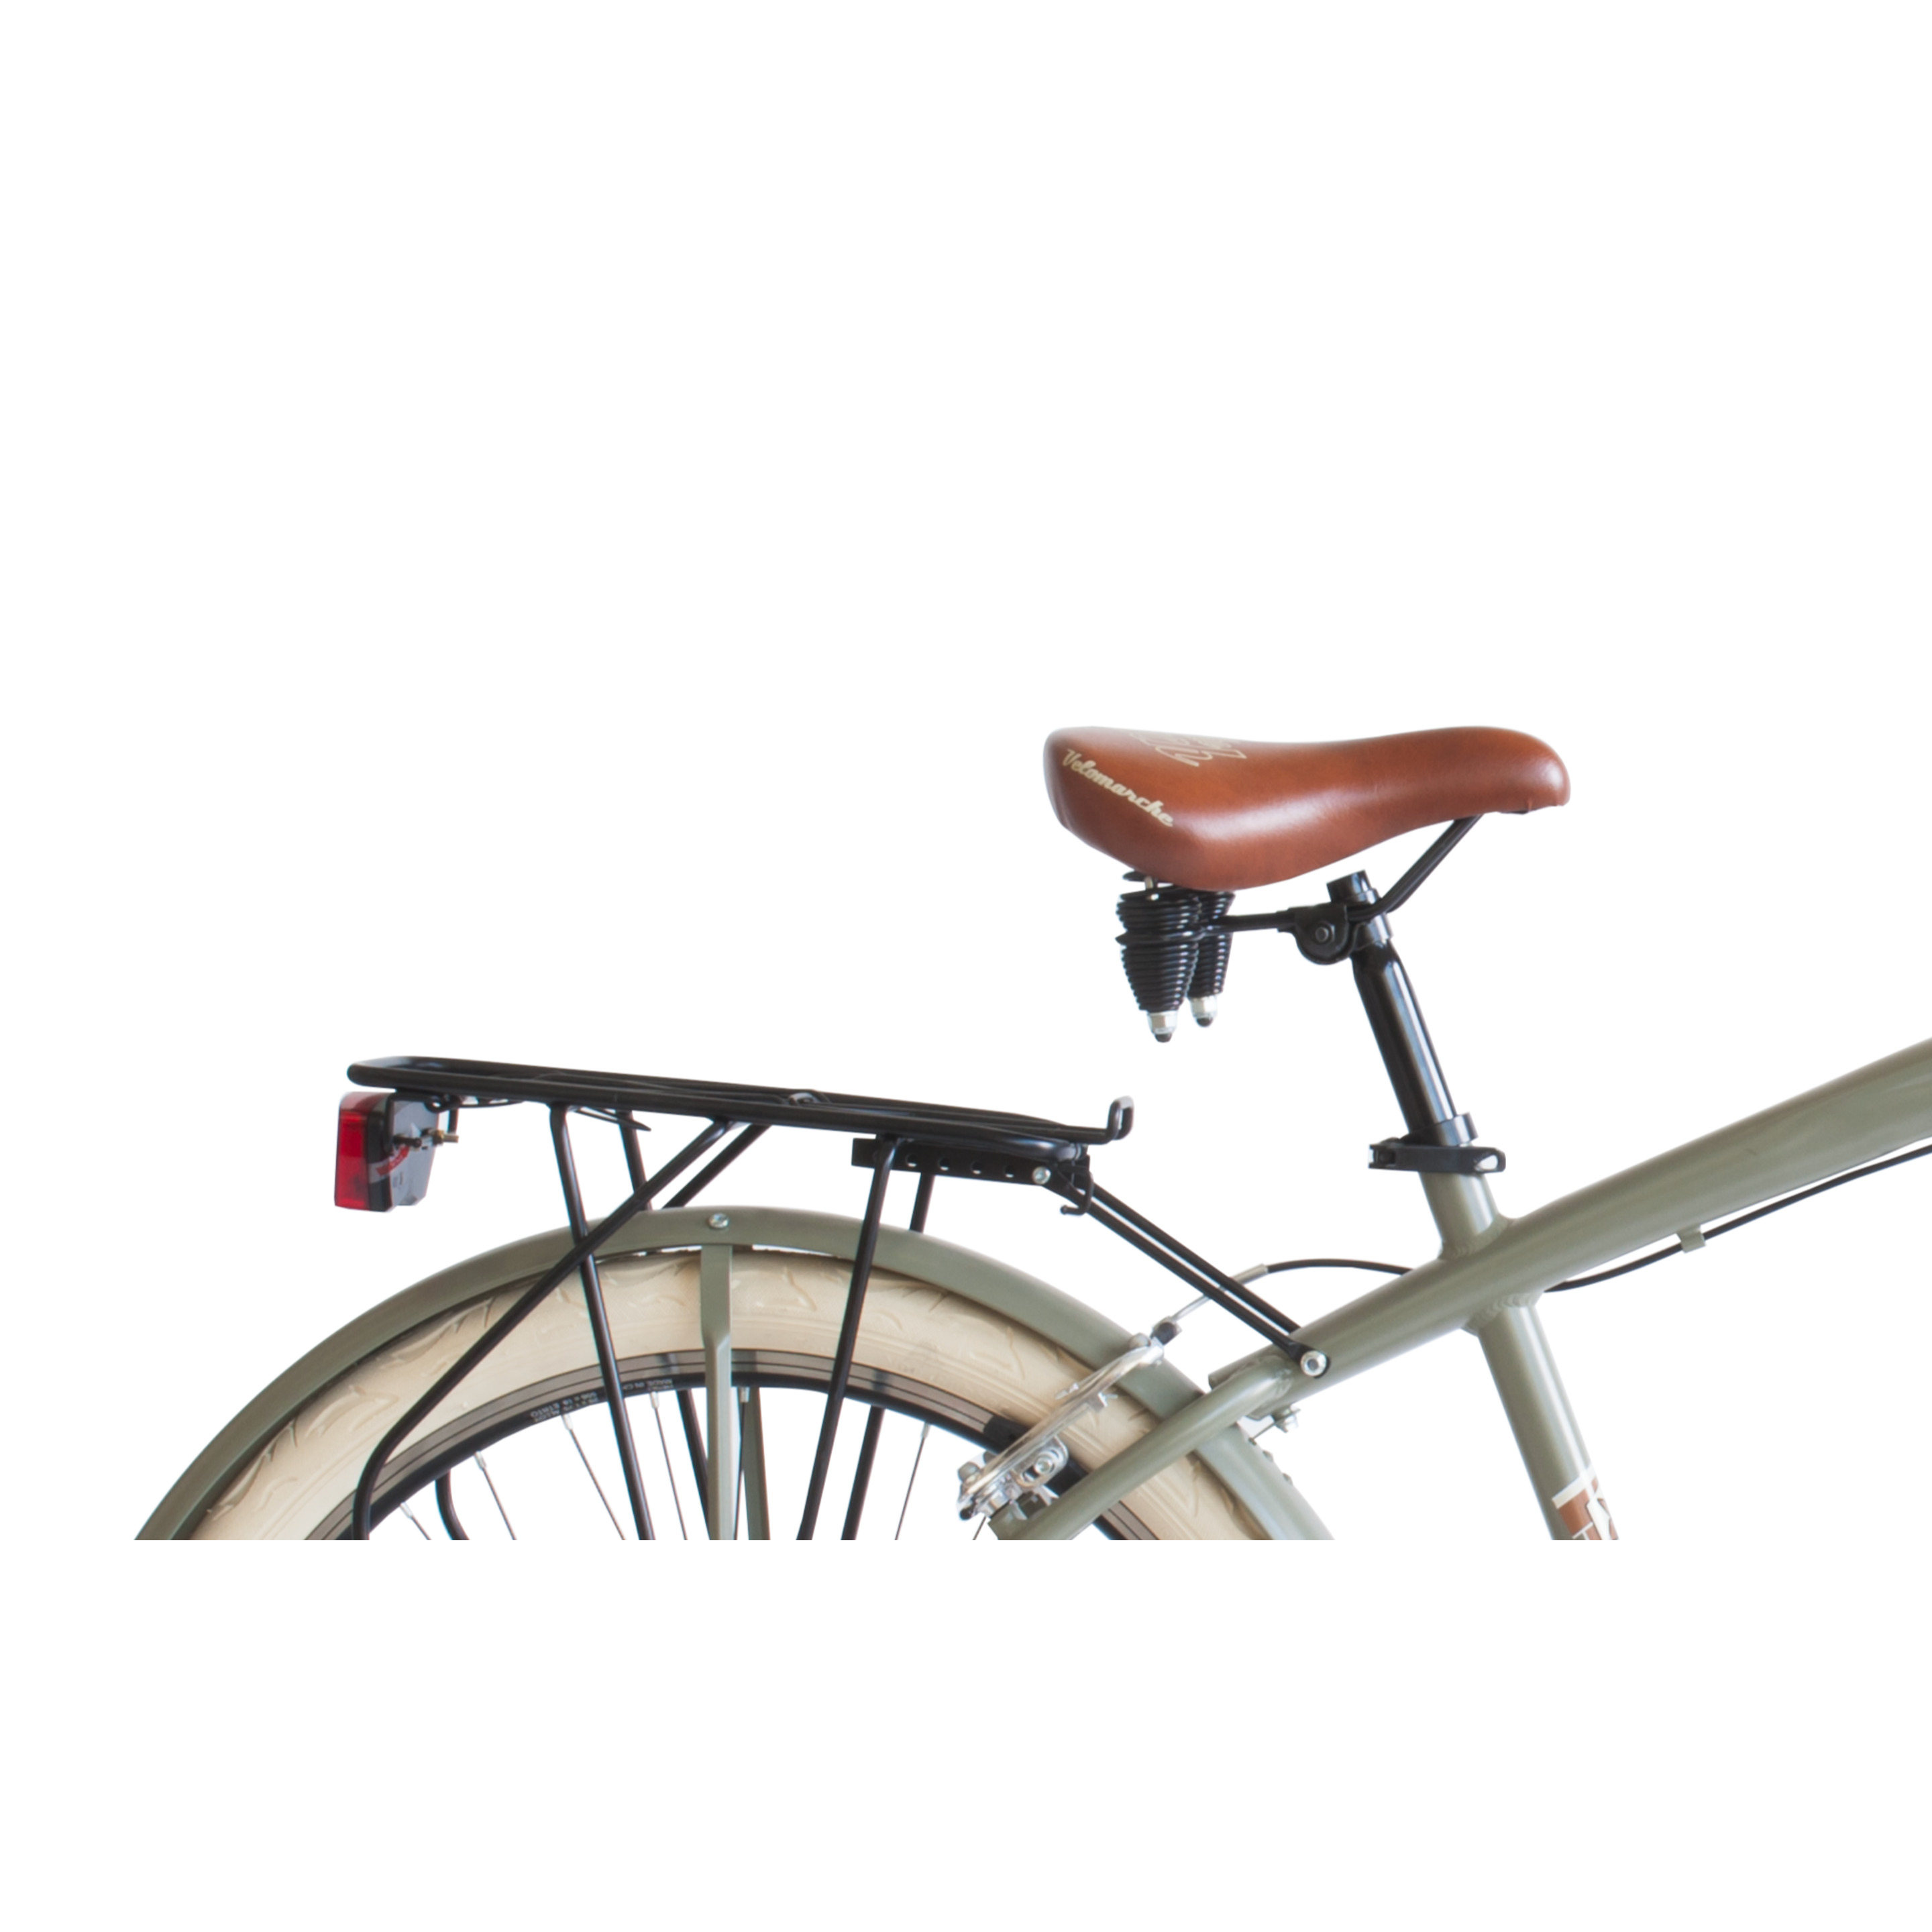 Bicicleta De Ciudad  Airbici 790m Cruiser - Verde - Vintage, paseo, ciudad, cruiser  MKP